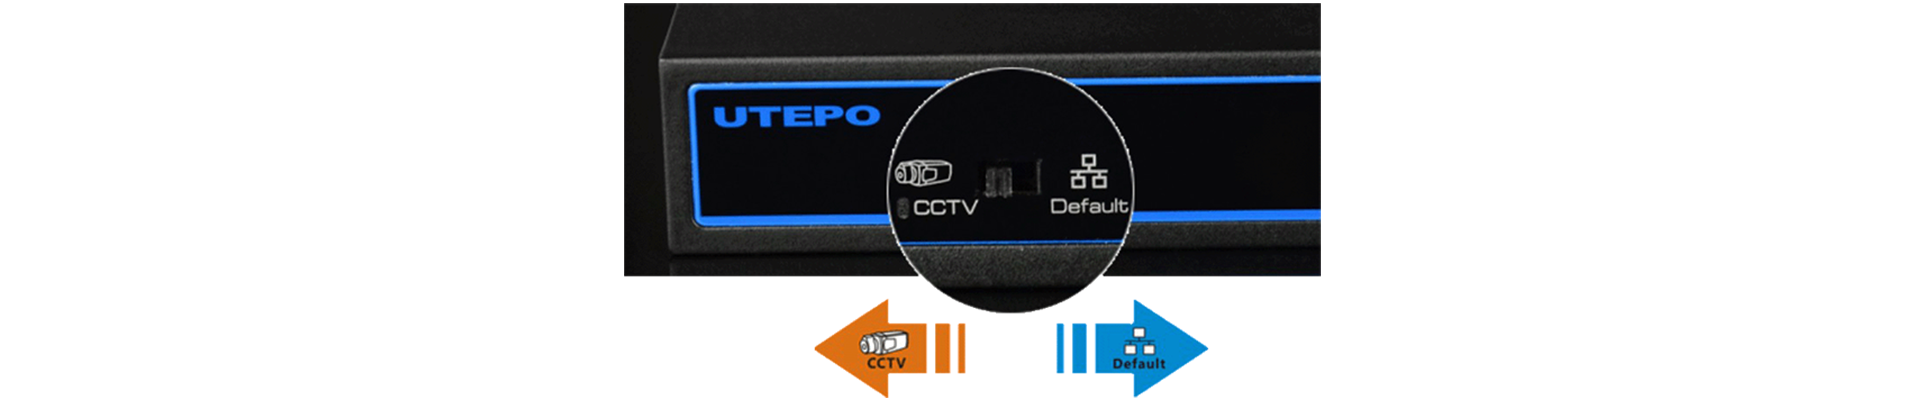 UTEPO One Key CCTV